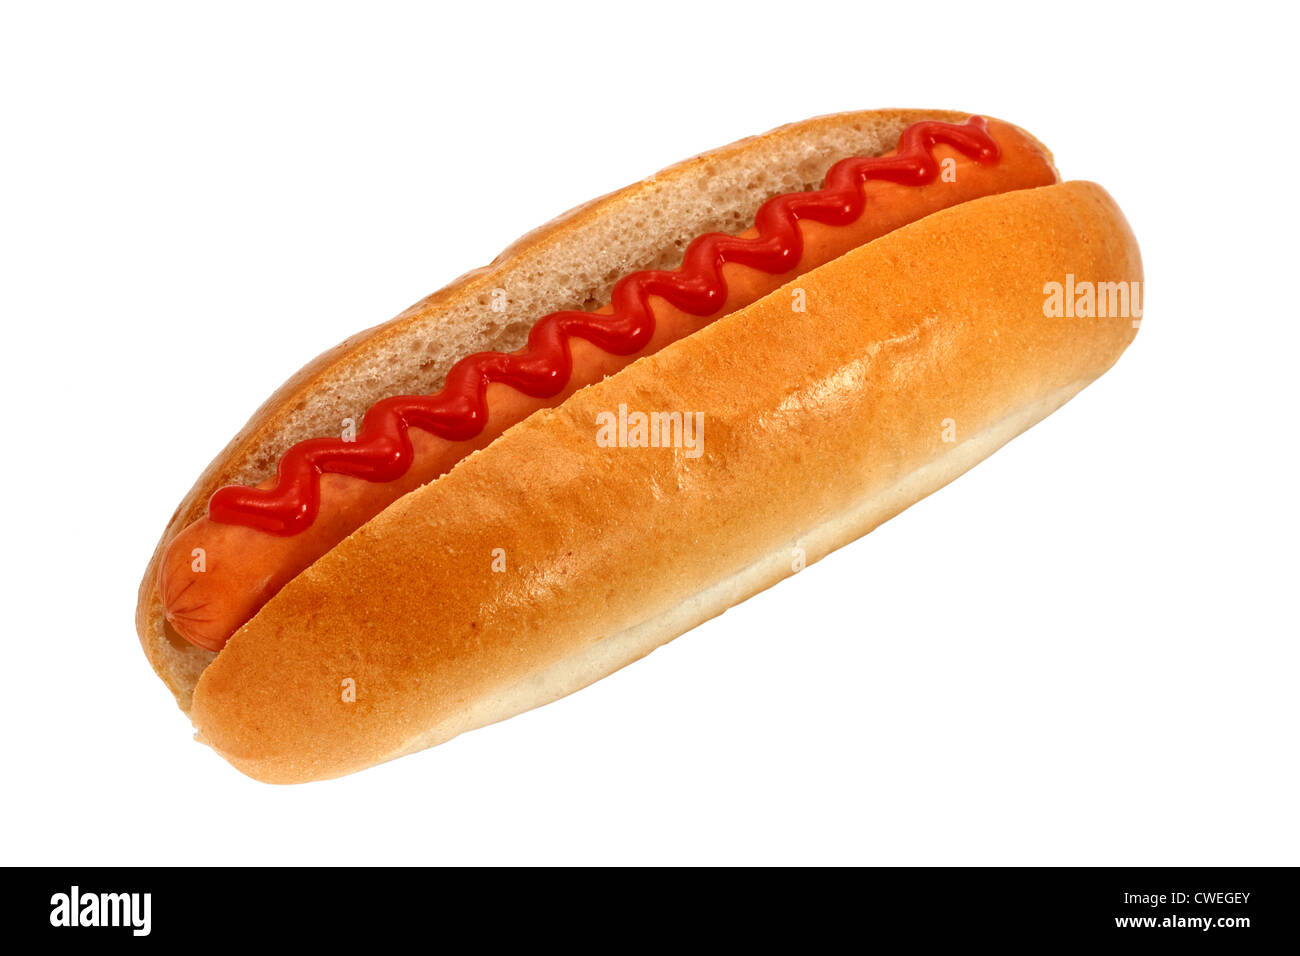 Perros calientes o Wiener con salsa de tomate, una popular comida rápida Foto de stock